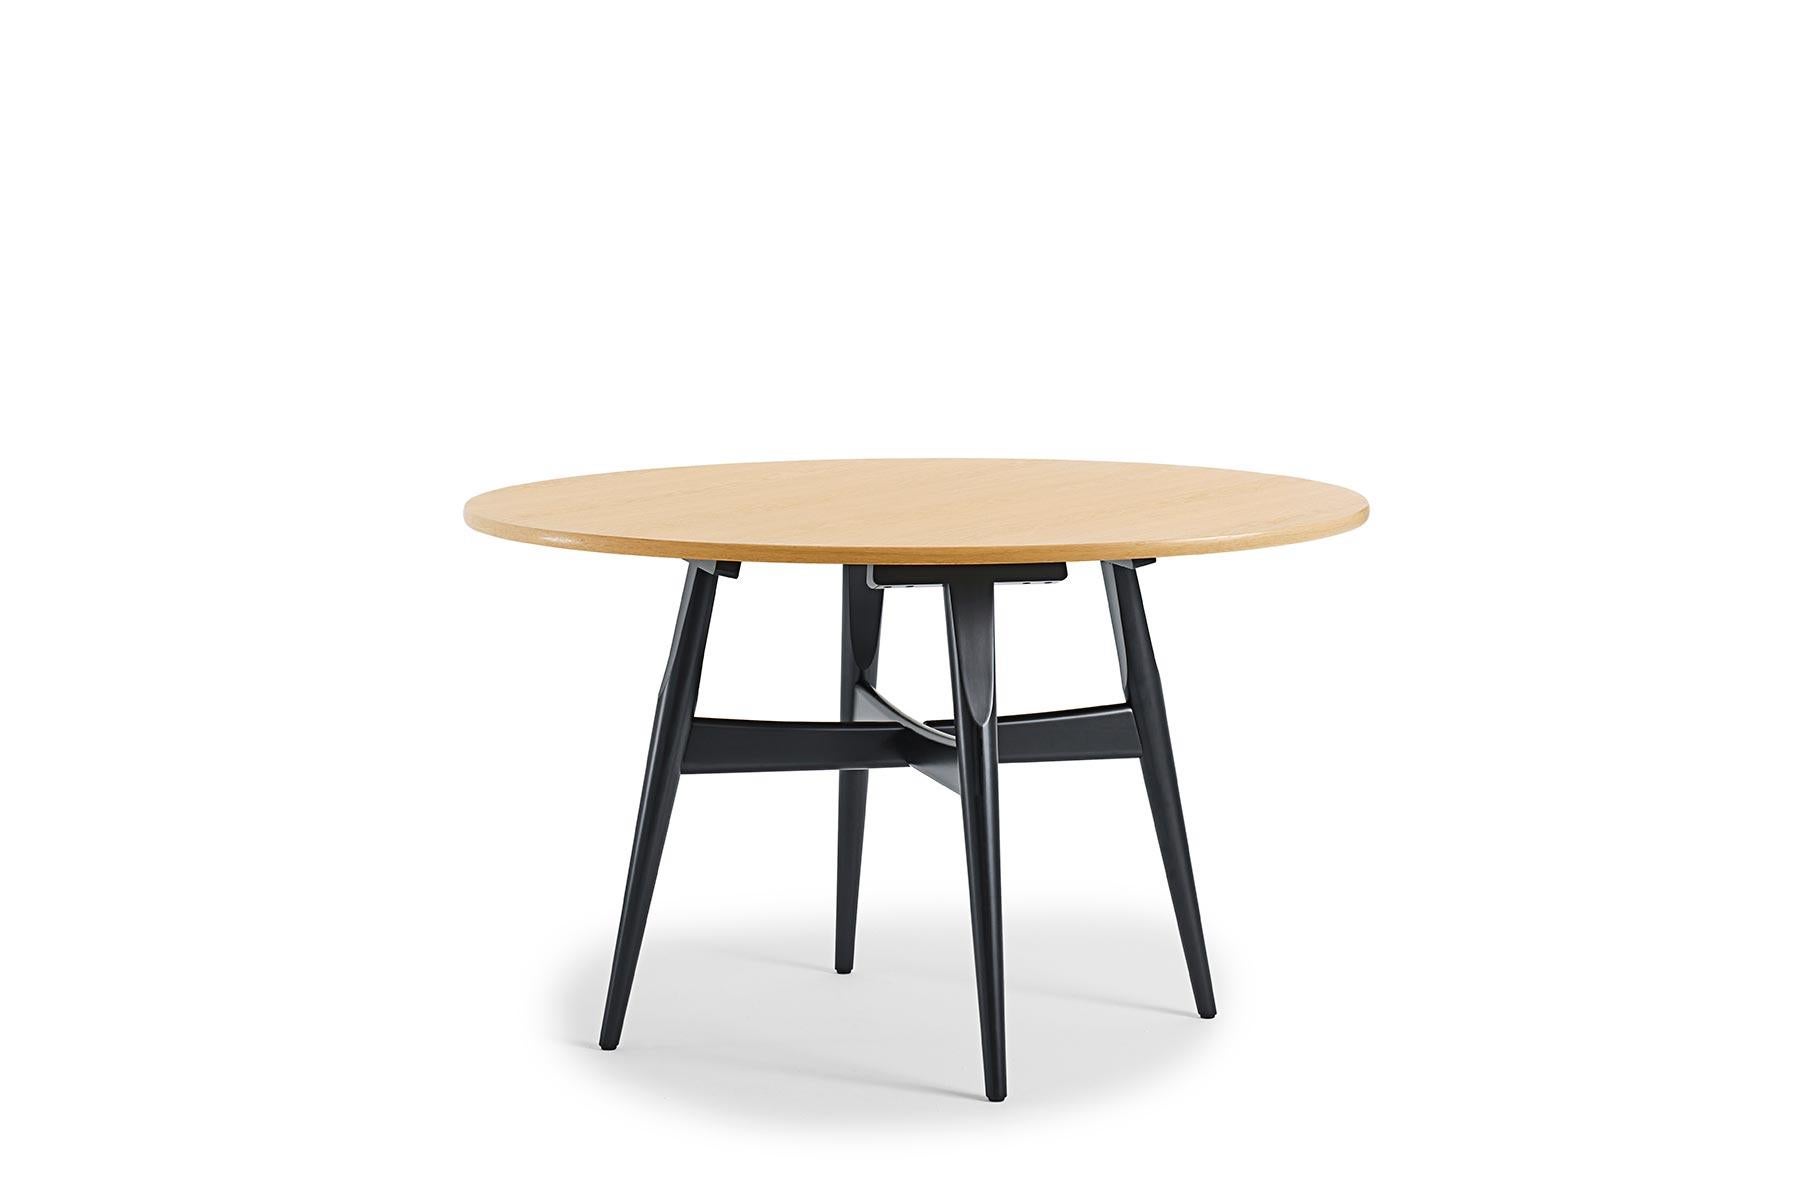 Der Esstisch 526 wurde 1970 von Hans Wegner für GETAMA entworfen und zeichnet sich durch eine unvergleichliche Handwerkskunst aus. Tadellose Tischlerarbeiten im gesamten Gebäude. Dieser Tisch wird in der GETAMA-Fabrik im dänischen Gedsted von